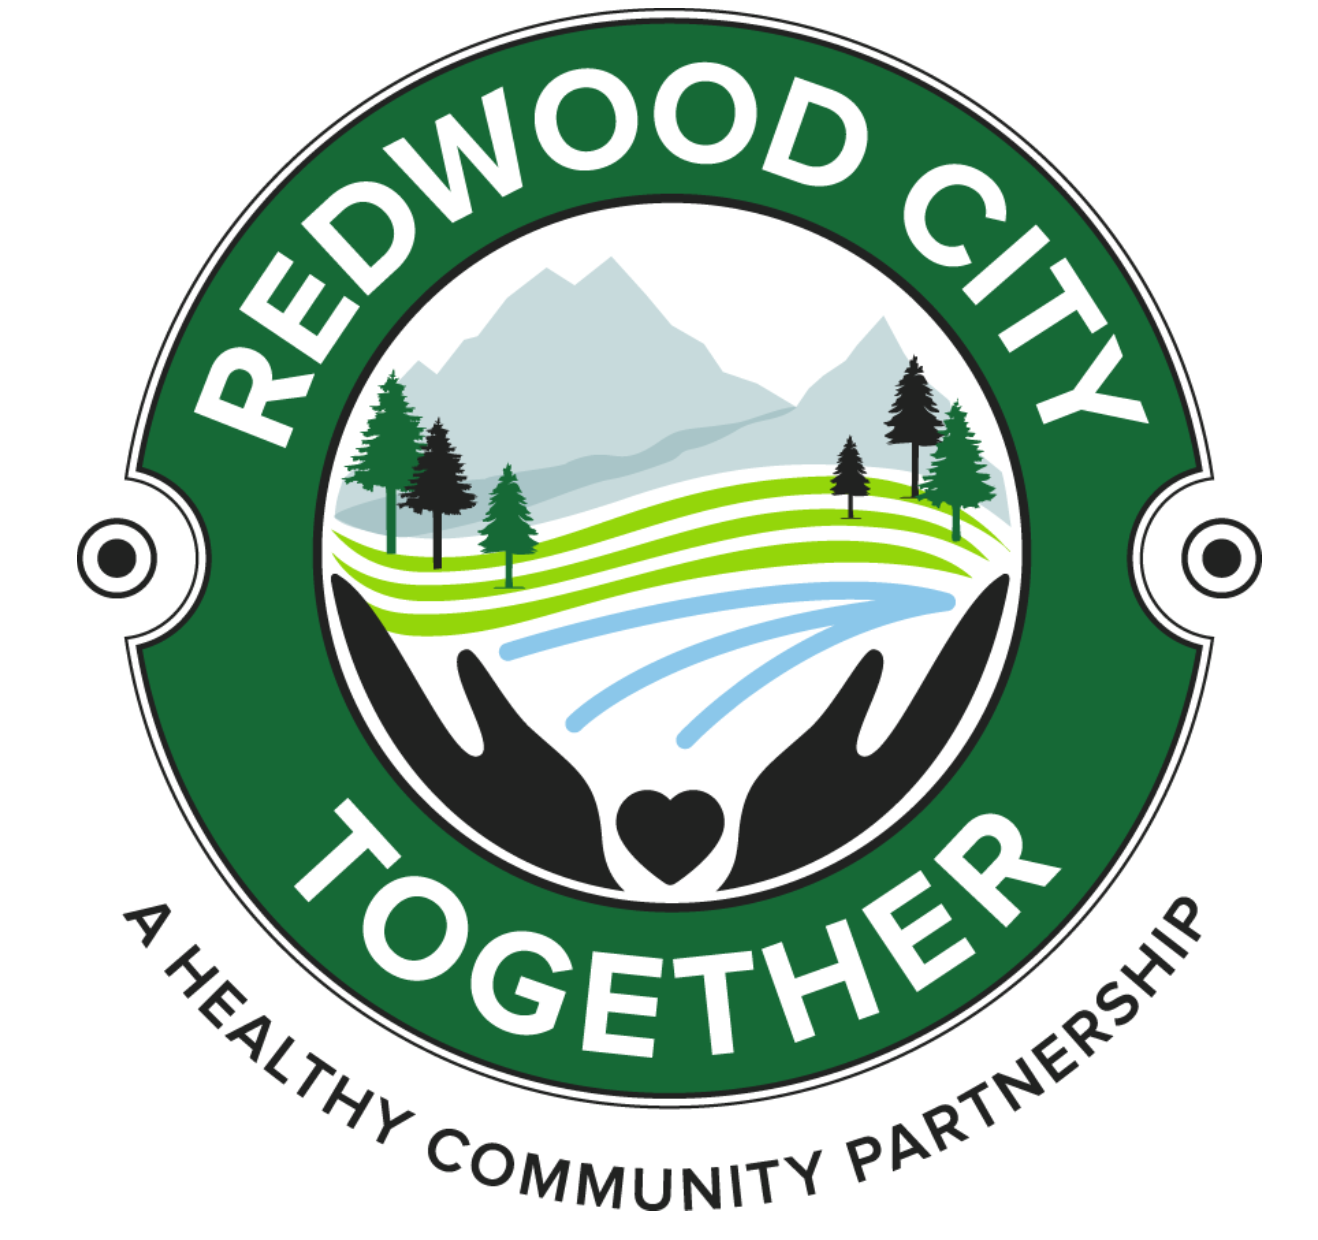 Redwood City Together